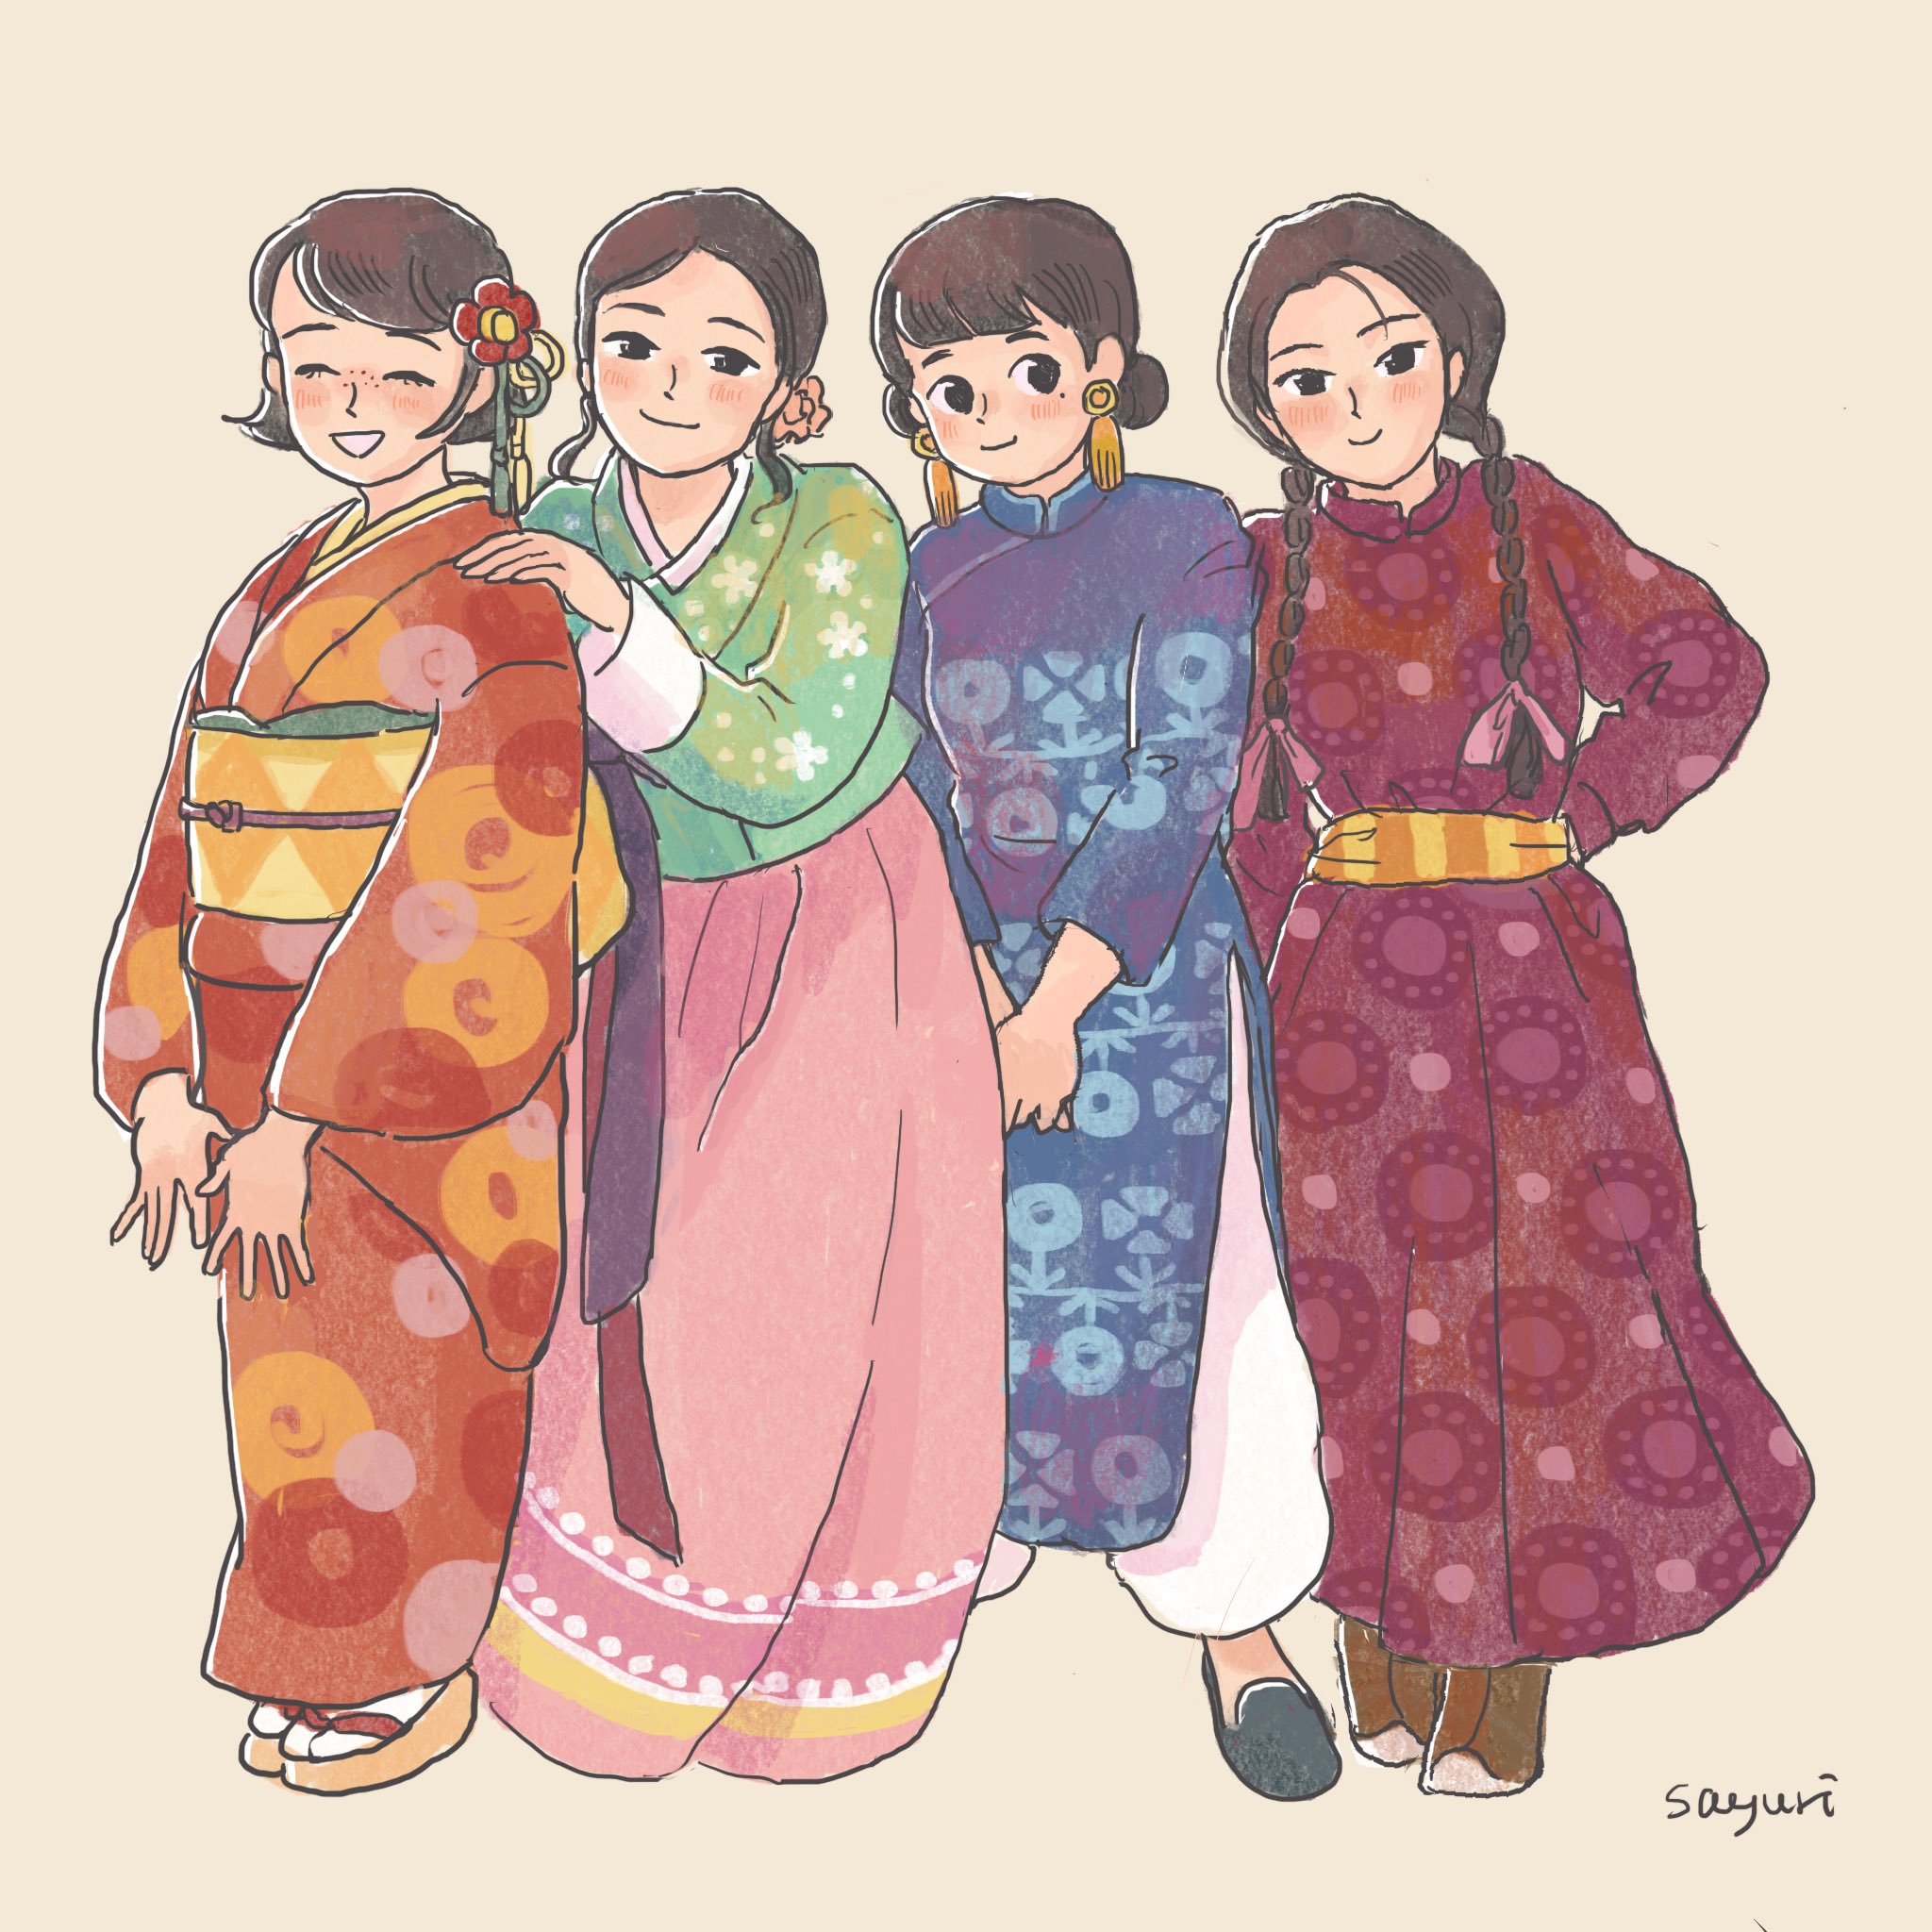 笹井さゆり Sasai Sayuri 日本の着物 韓国のチマチョゴリ 中国のチャイナドレス モンゴルのデールです 実際の構造は イラストと少しちがうかも 中国の少数民族の衣装などを含めるともっと多様で 東アジアにしぼっても描ききれません どの衣装にも